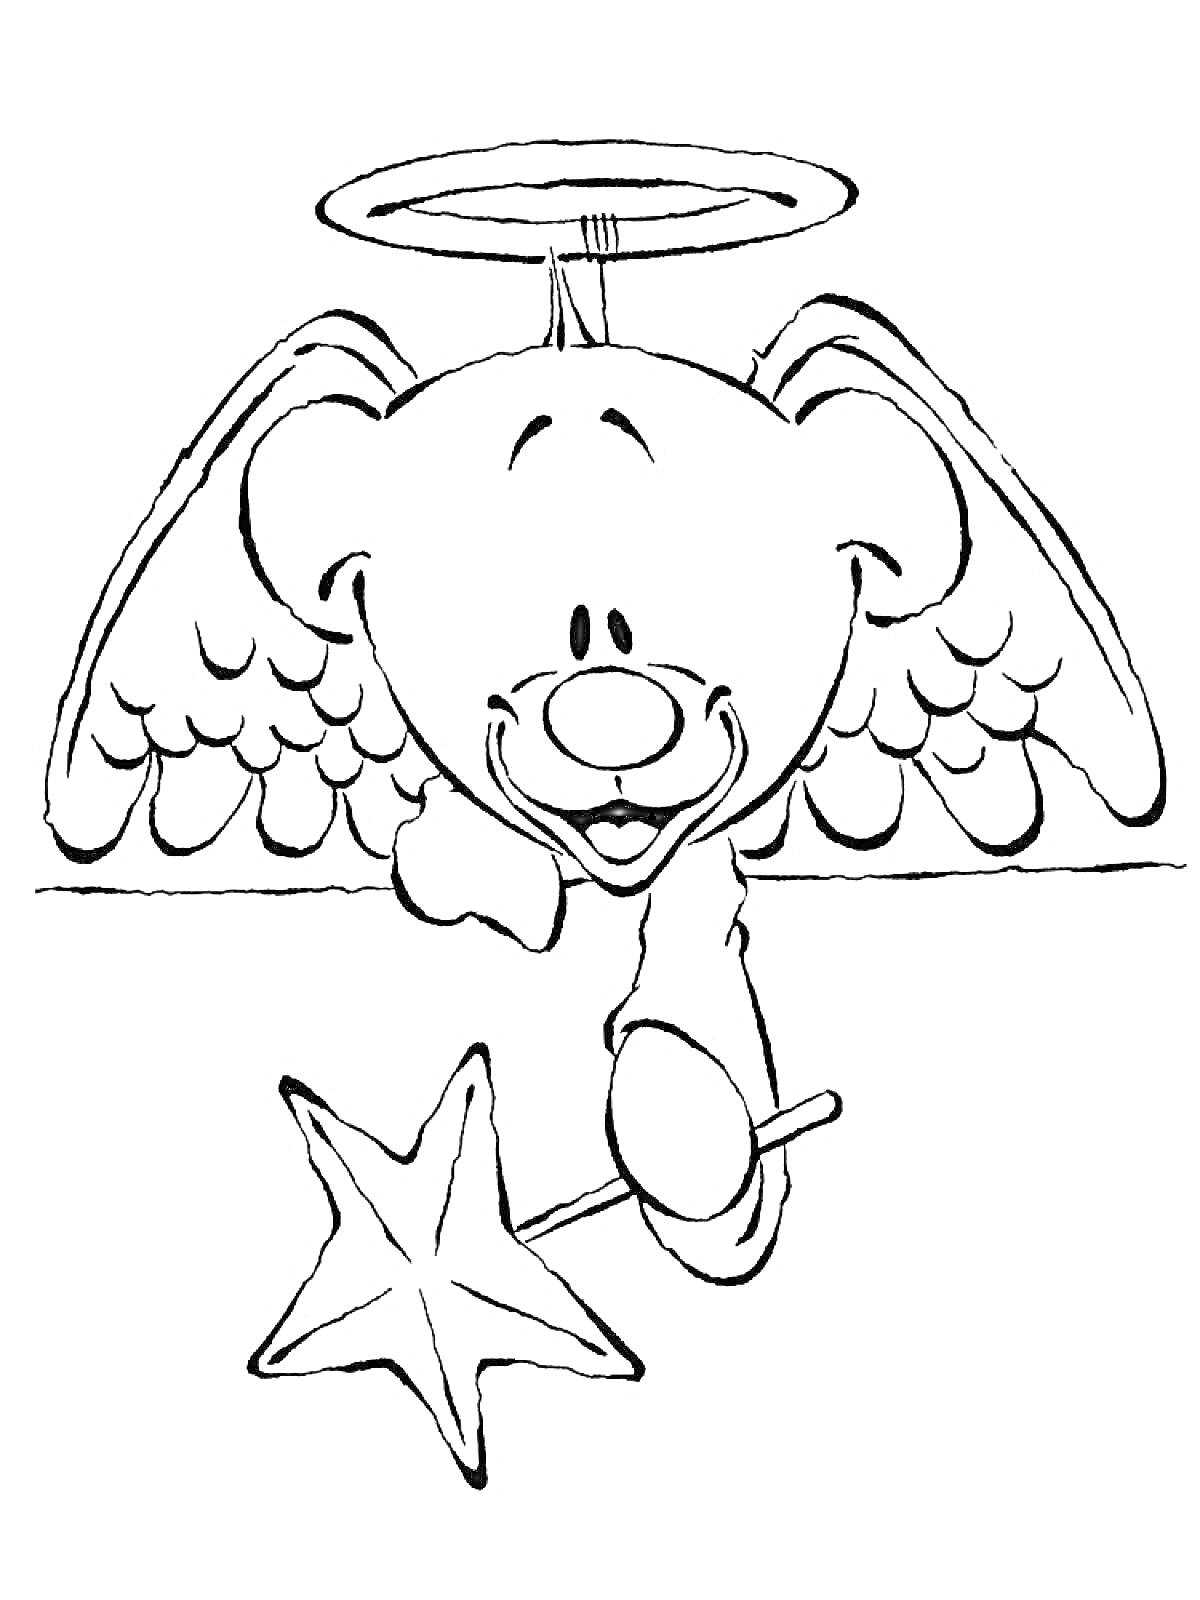 Диддл в образе ангела с нимбом и волшебной палочкой в форме звезды